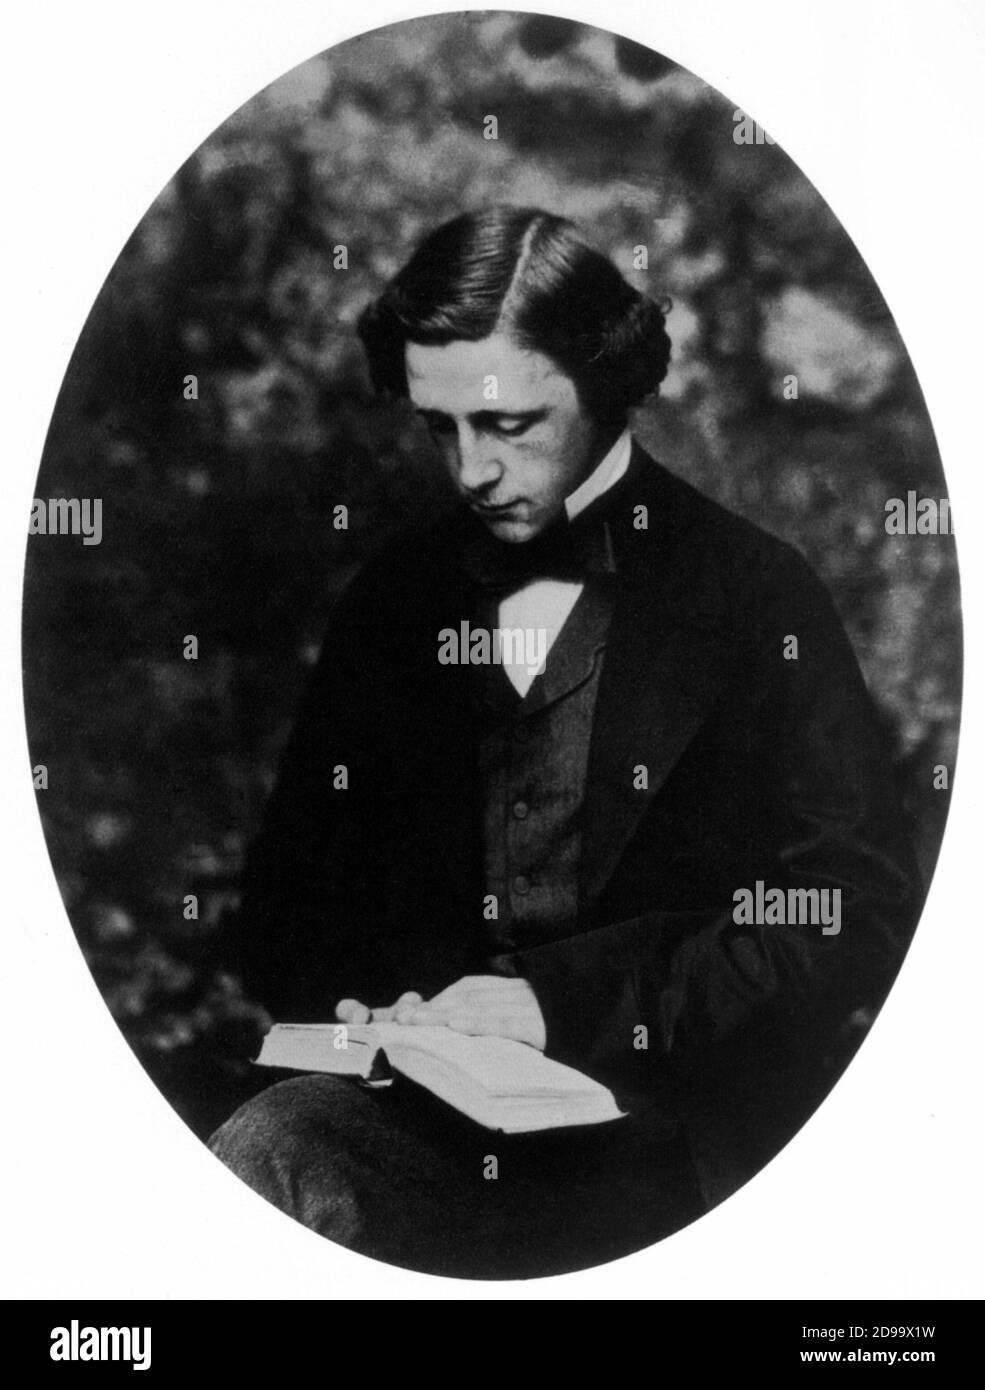 1856 C, GRAN BRETAÑA : Autorretrato del fotógrafo, matemático y escritor LEWIS CARROLL ( nacido Charles Lutwidge Dodgson , 1832 - 1898 ) - LETTERATURA - LITERATURA - SCRITTORE - retrato - ritratto - AUTORITRATTO - libro - lettura - lettore - lector - cravatta - papillon tie ---- Archivio GBB Foto de stock